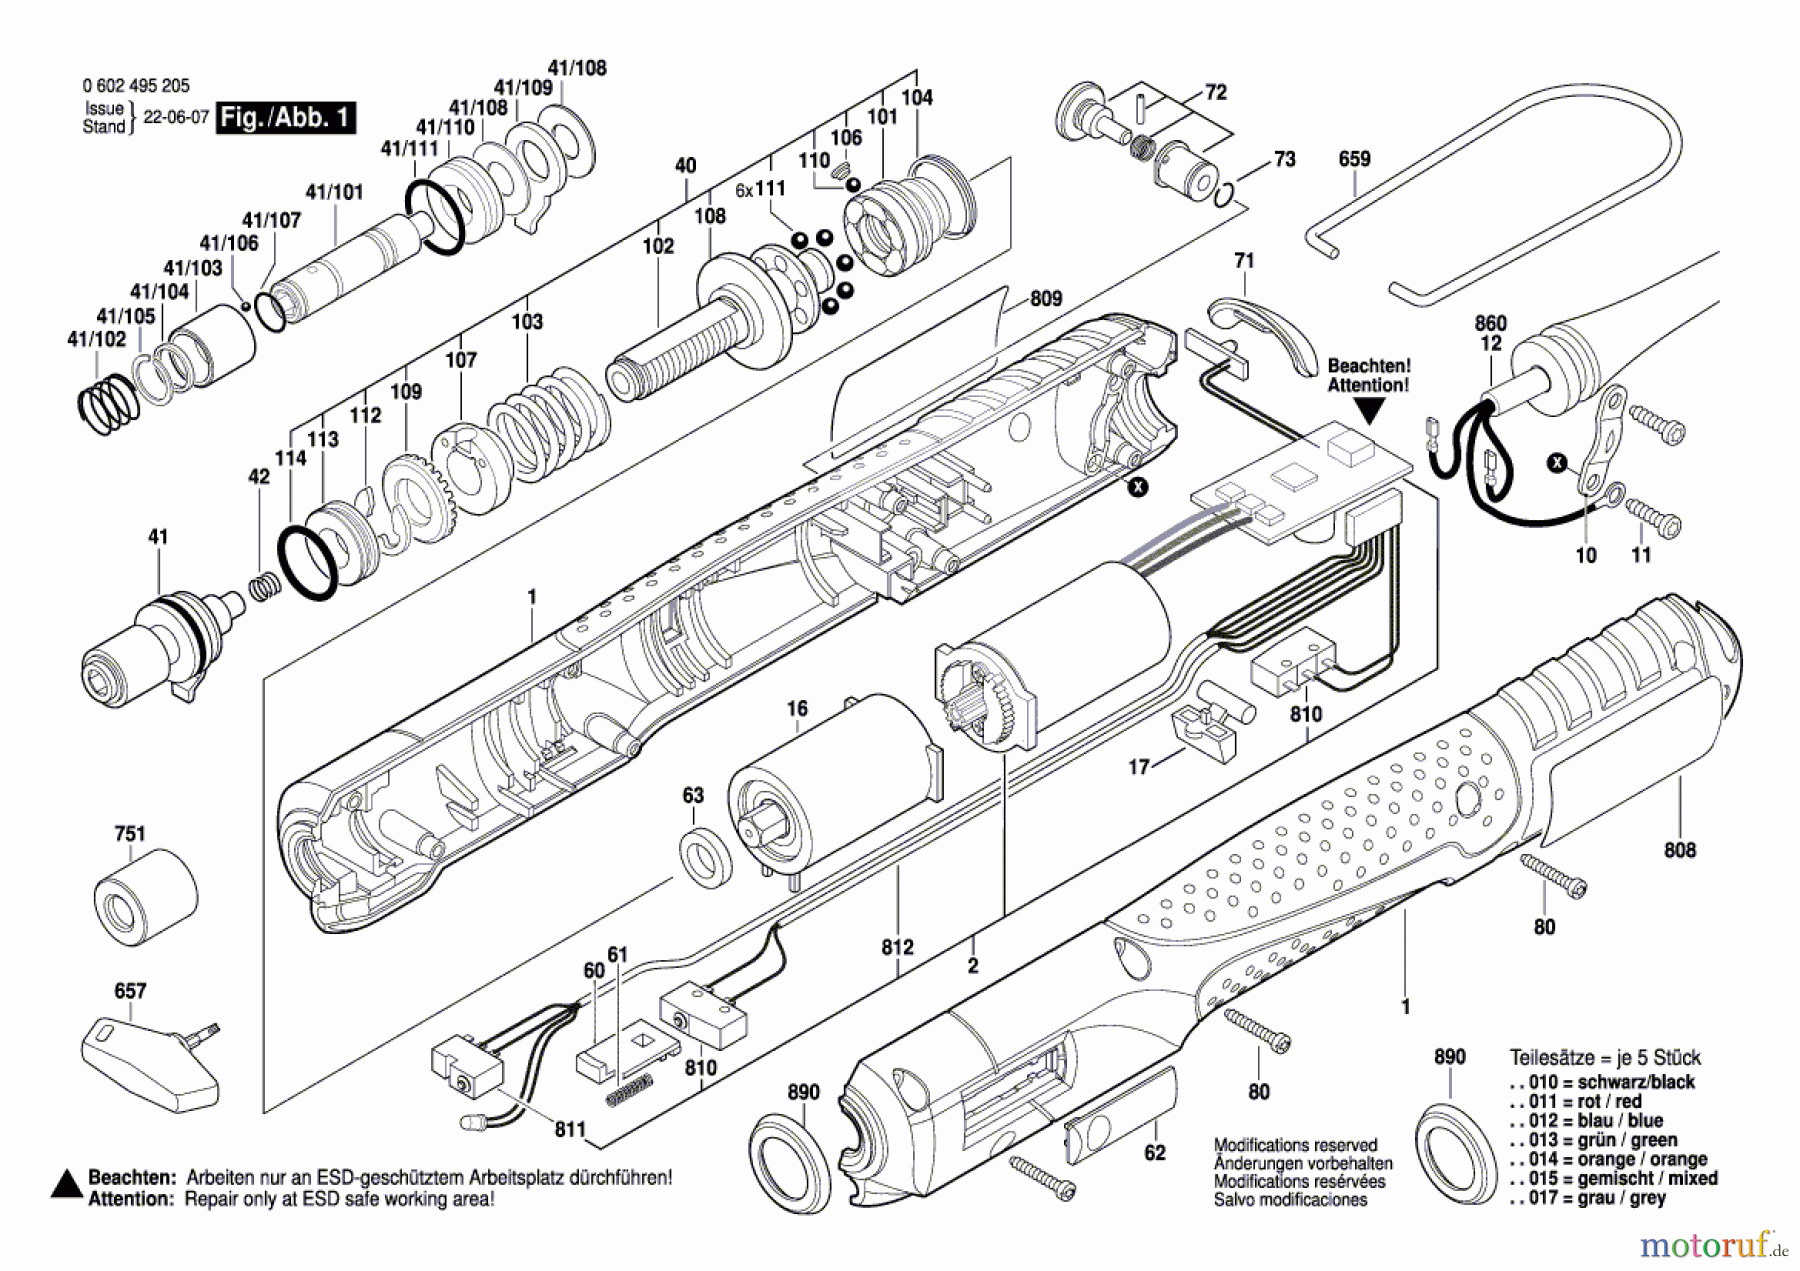  Bosch Werkzeug Schrauber C-EXACT 6 Seite 1